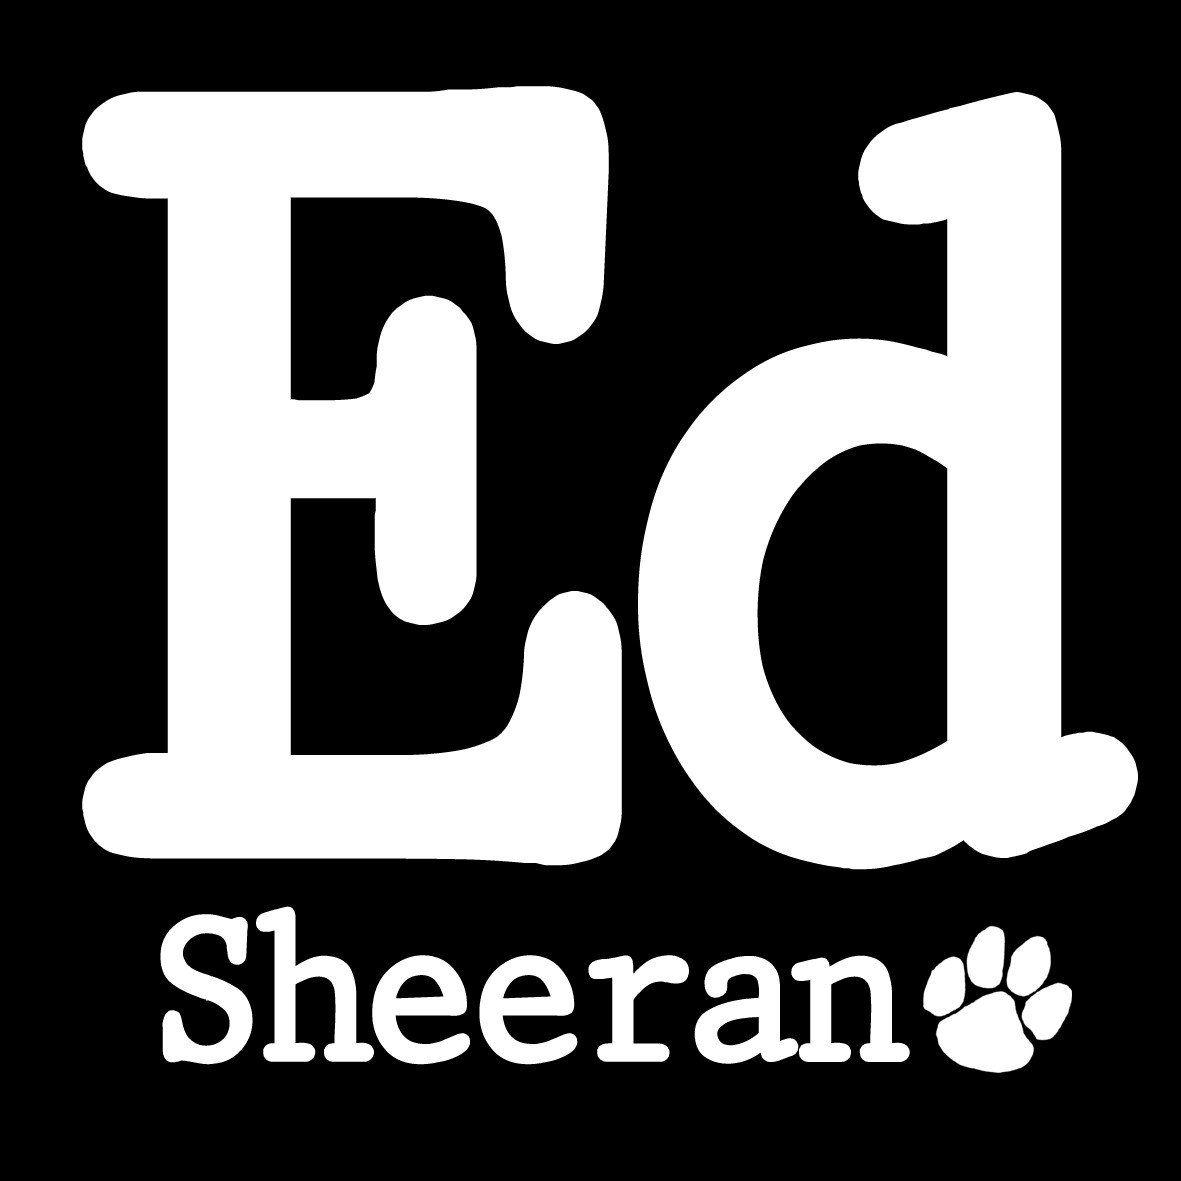 Ed Sheeran Logo - Ed Sheeran – CENTRAL T-SHIRTS